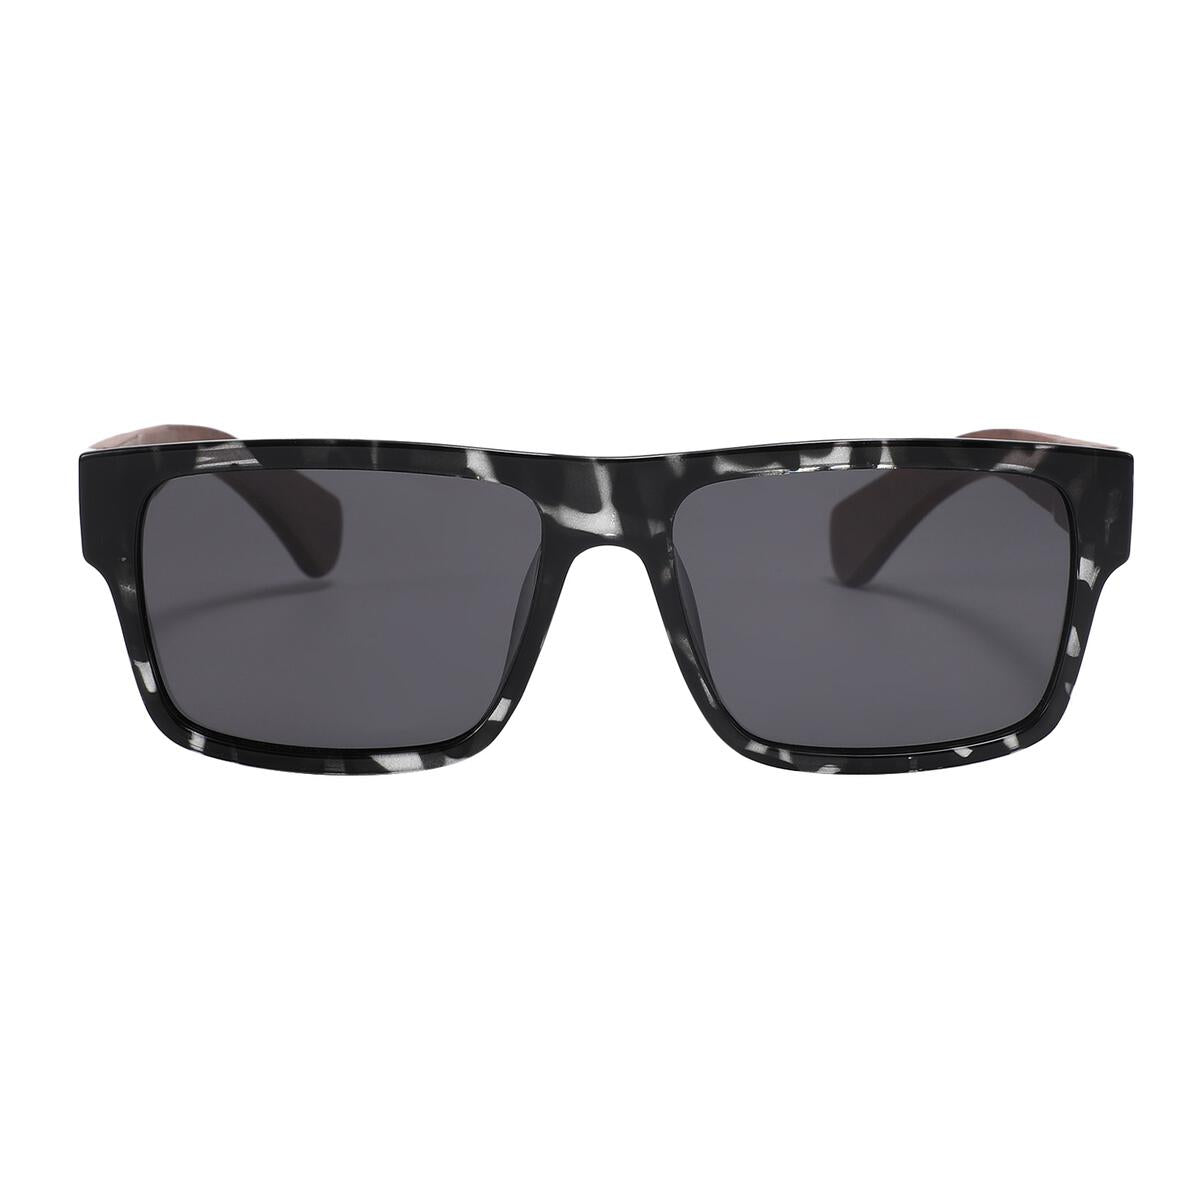 Kuma Polarized Sunglasses Guatamala Sunglasses Kuma Sunglasses Black Marble  